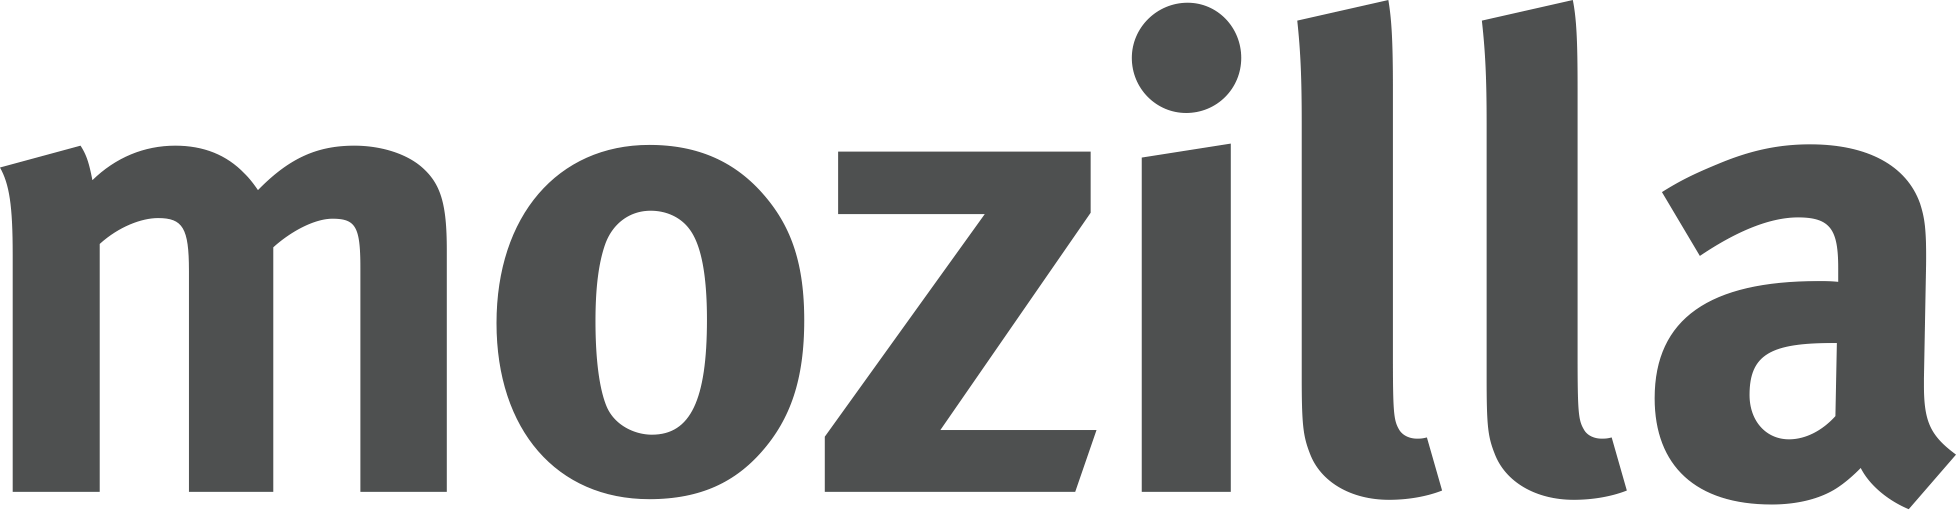 Mozilla text logo